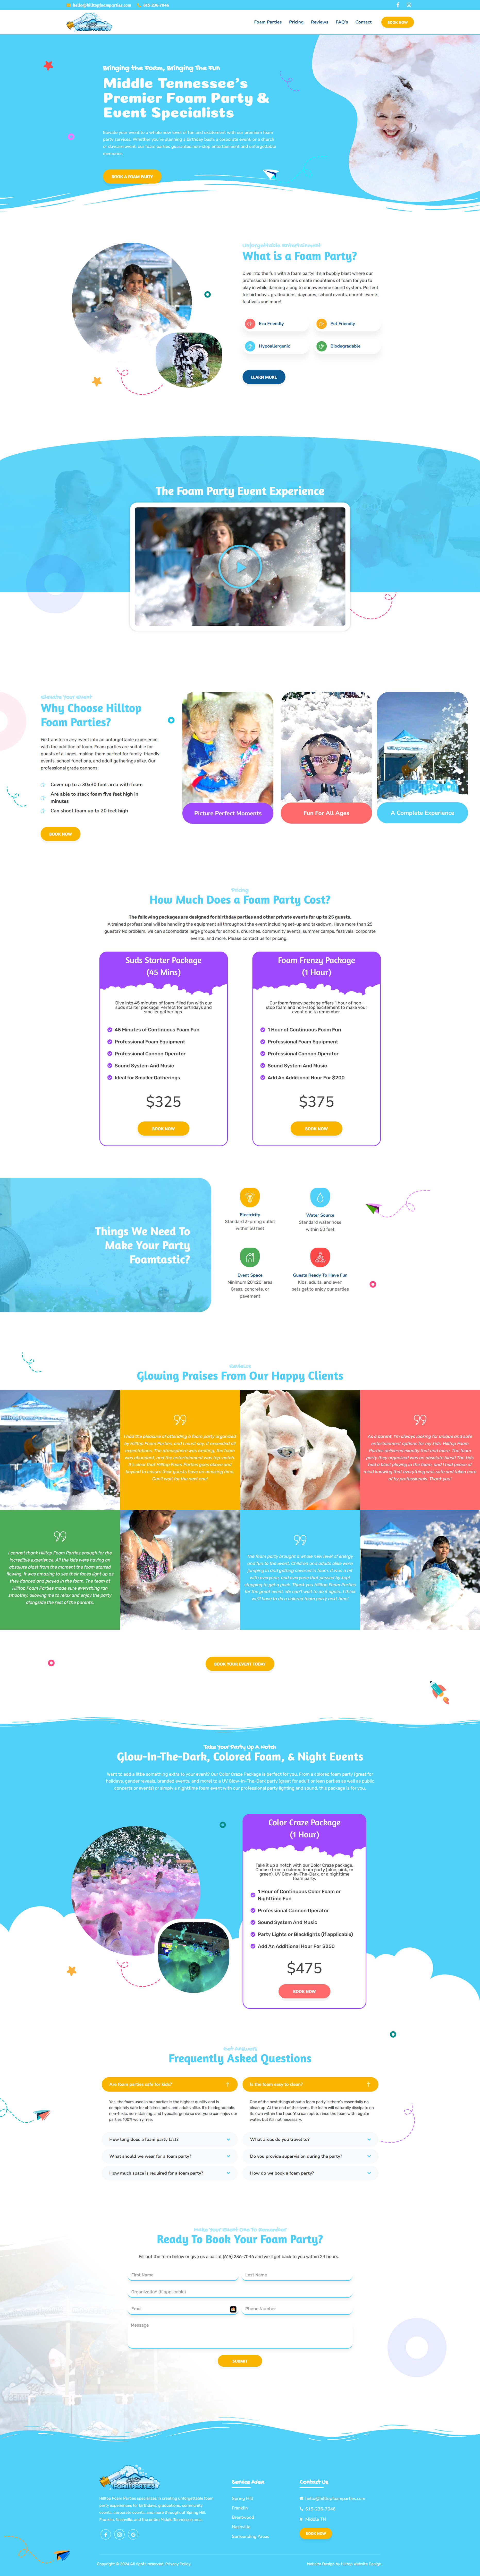 Foam party entertainment web design